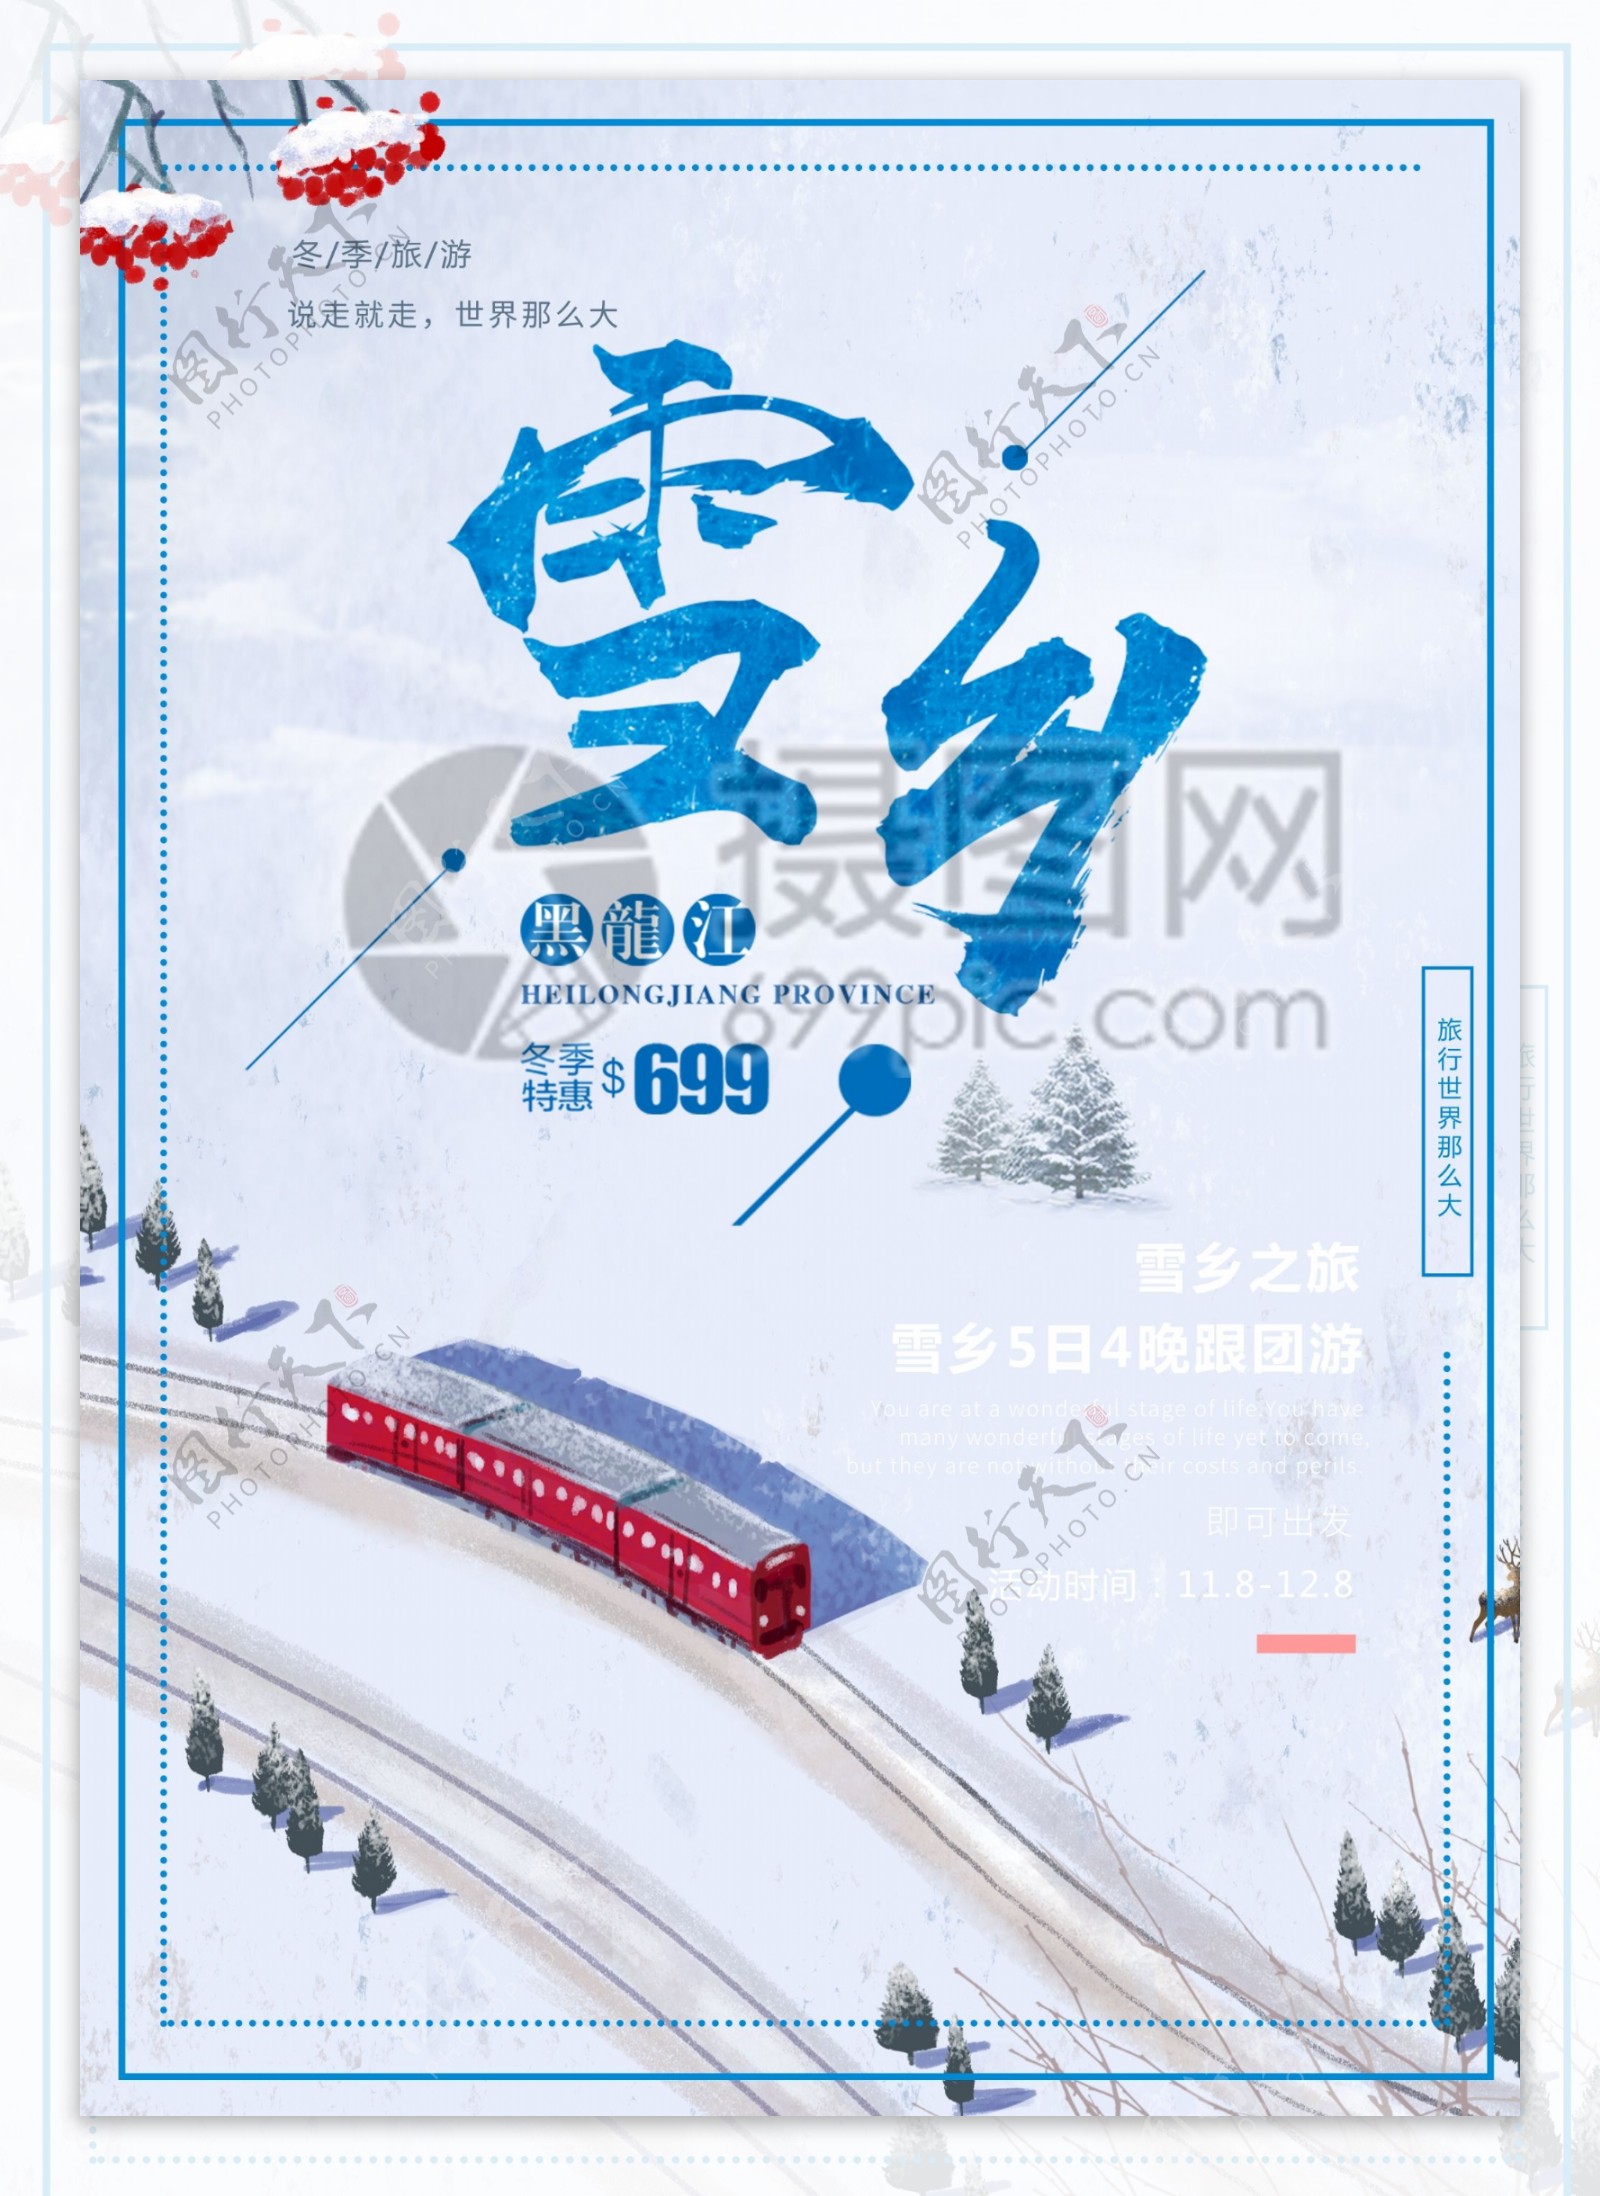 冬季雪乡黑龙江旅游宣传单